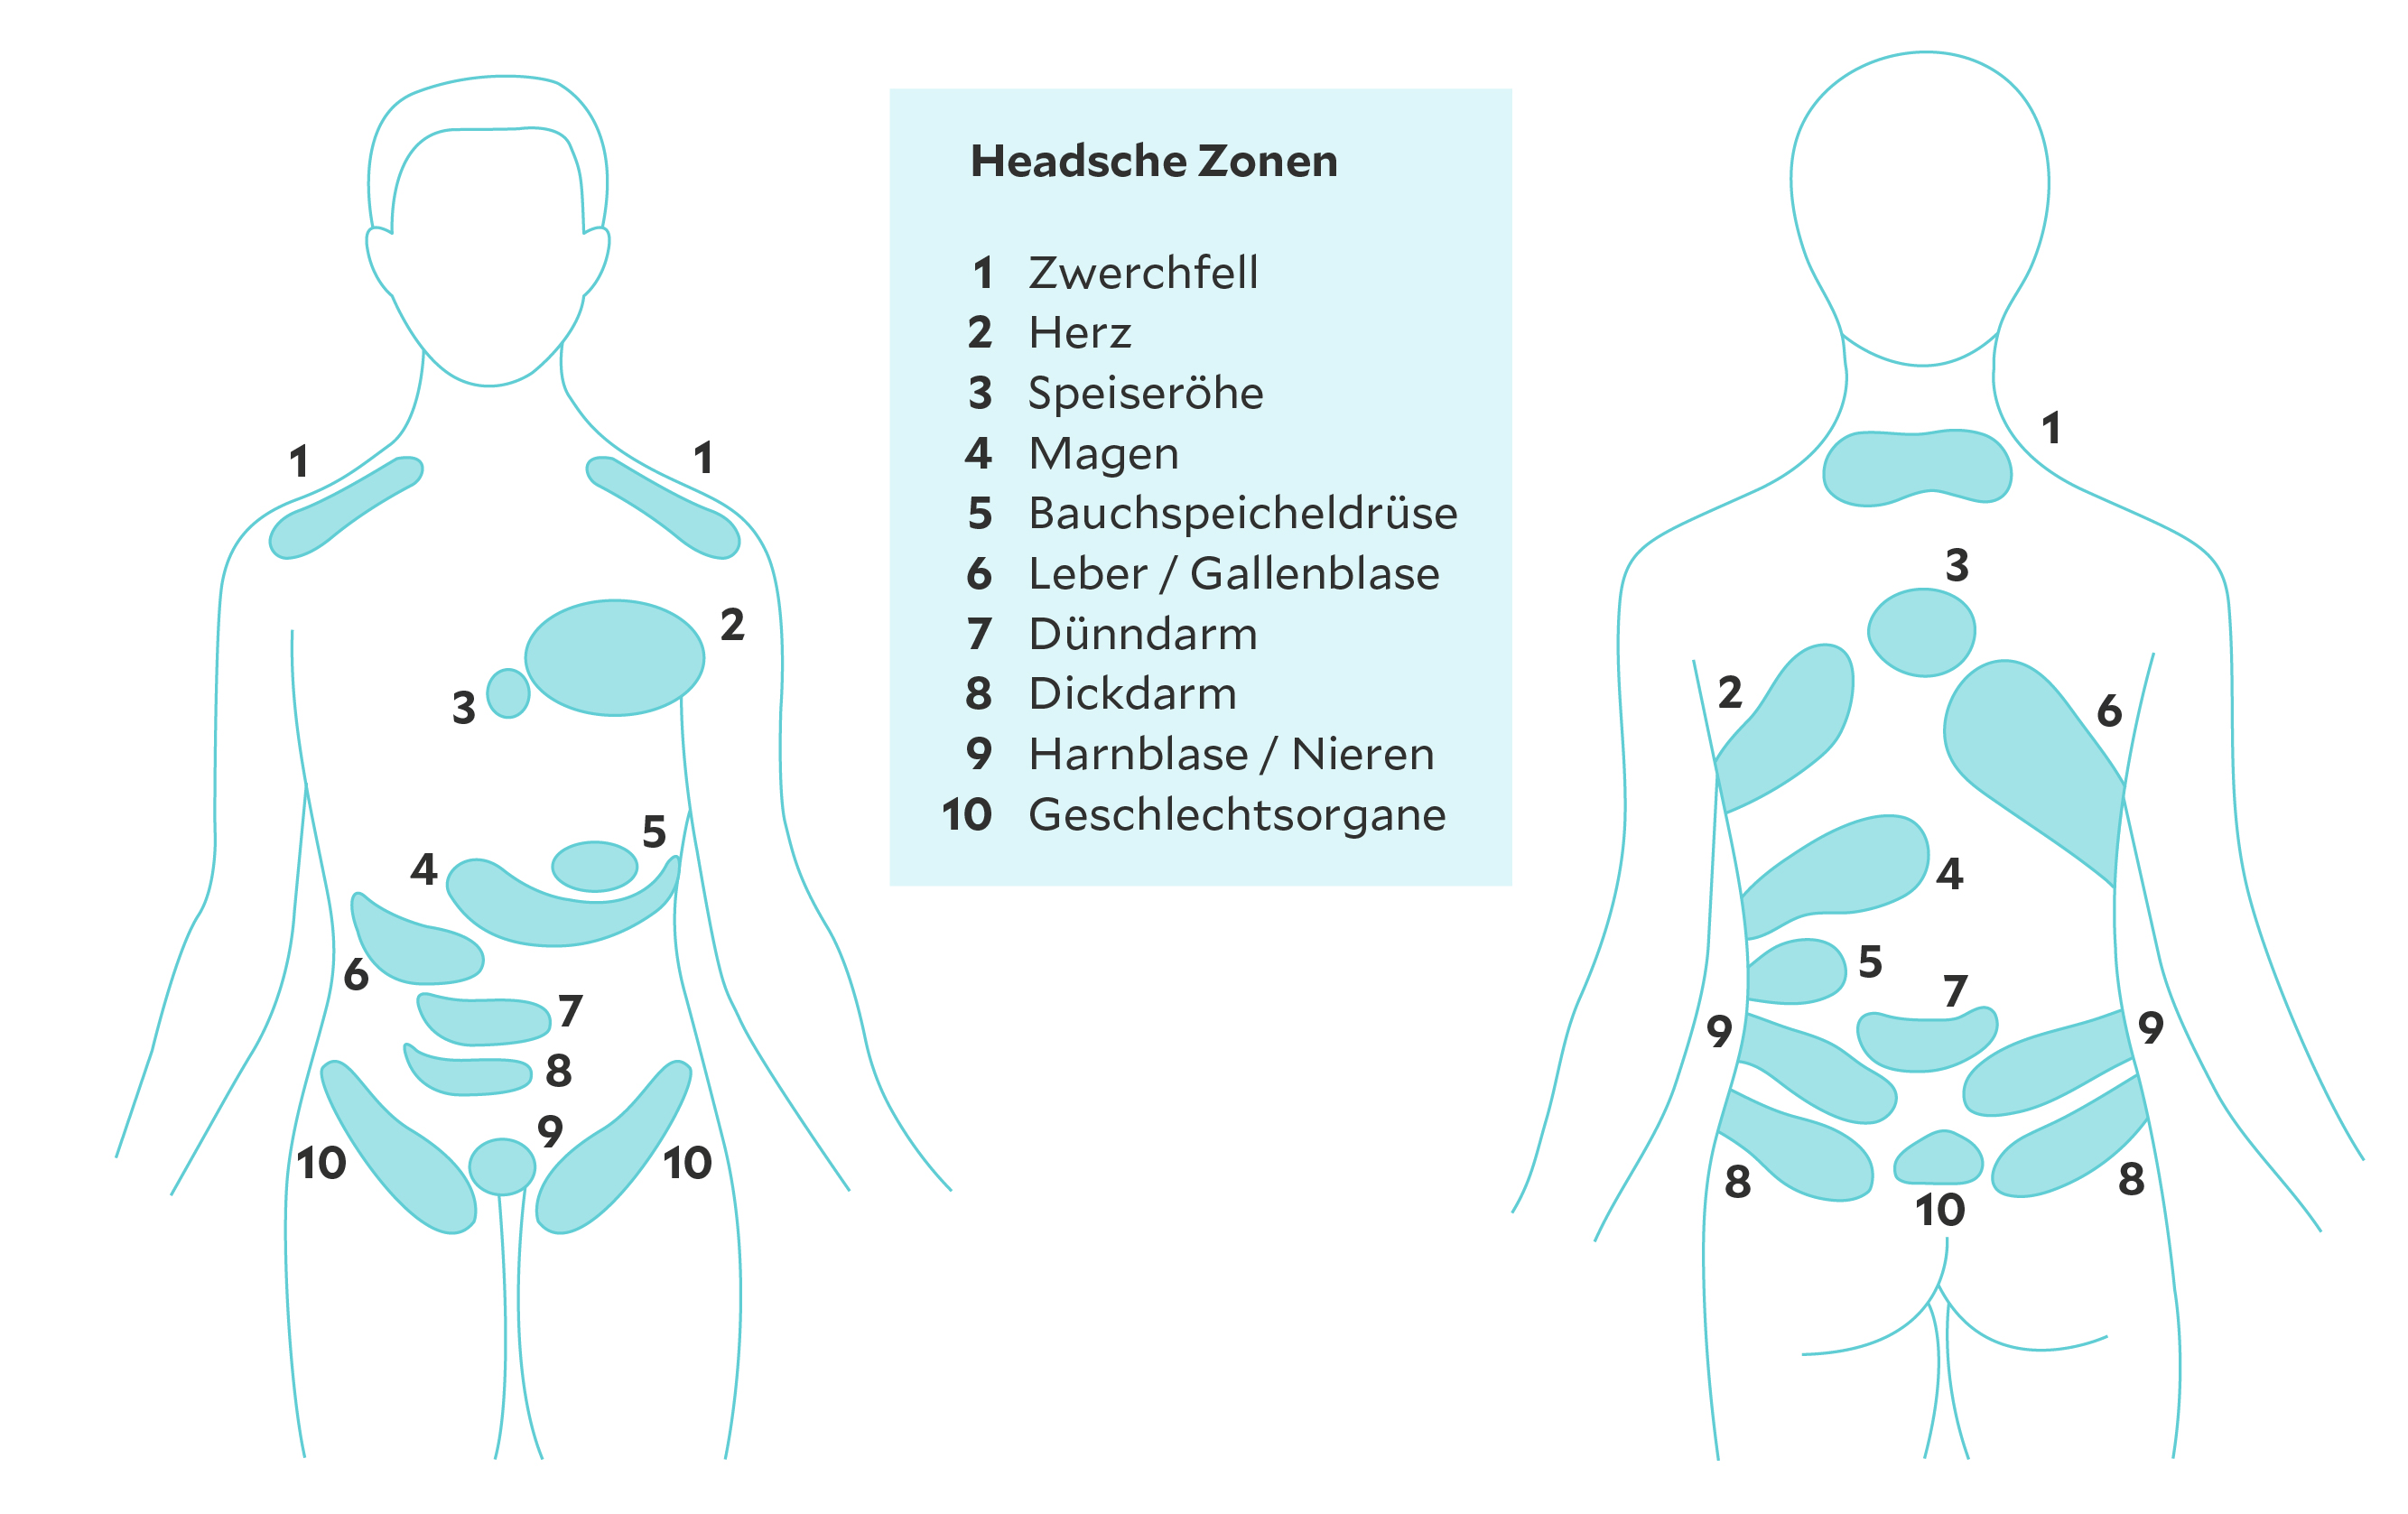 Headsche Zonen illustriert